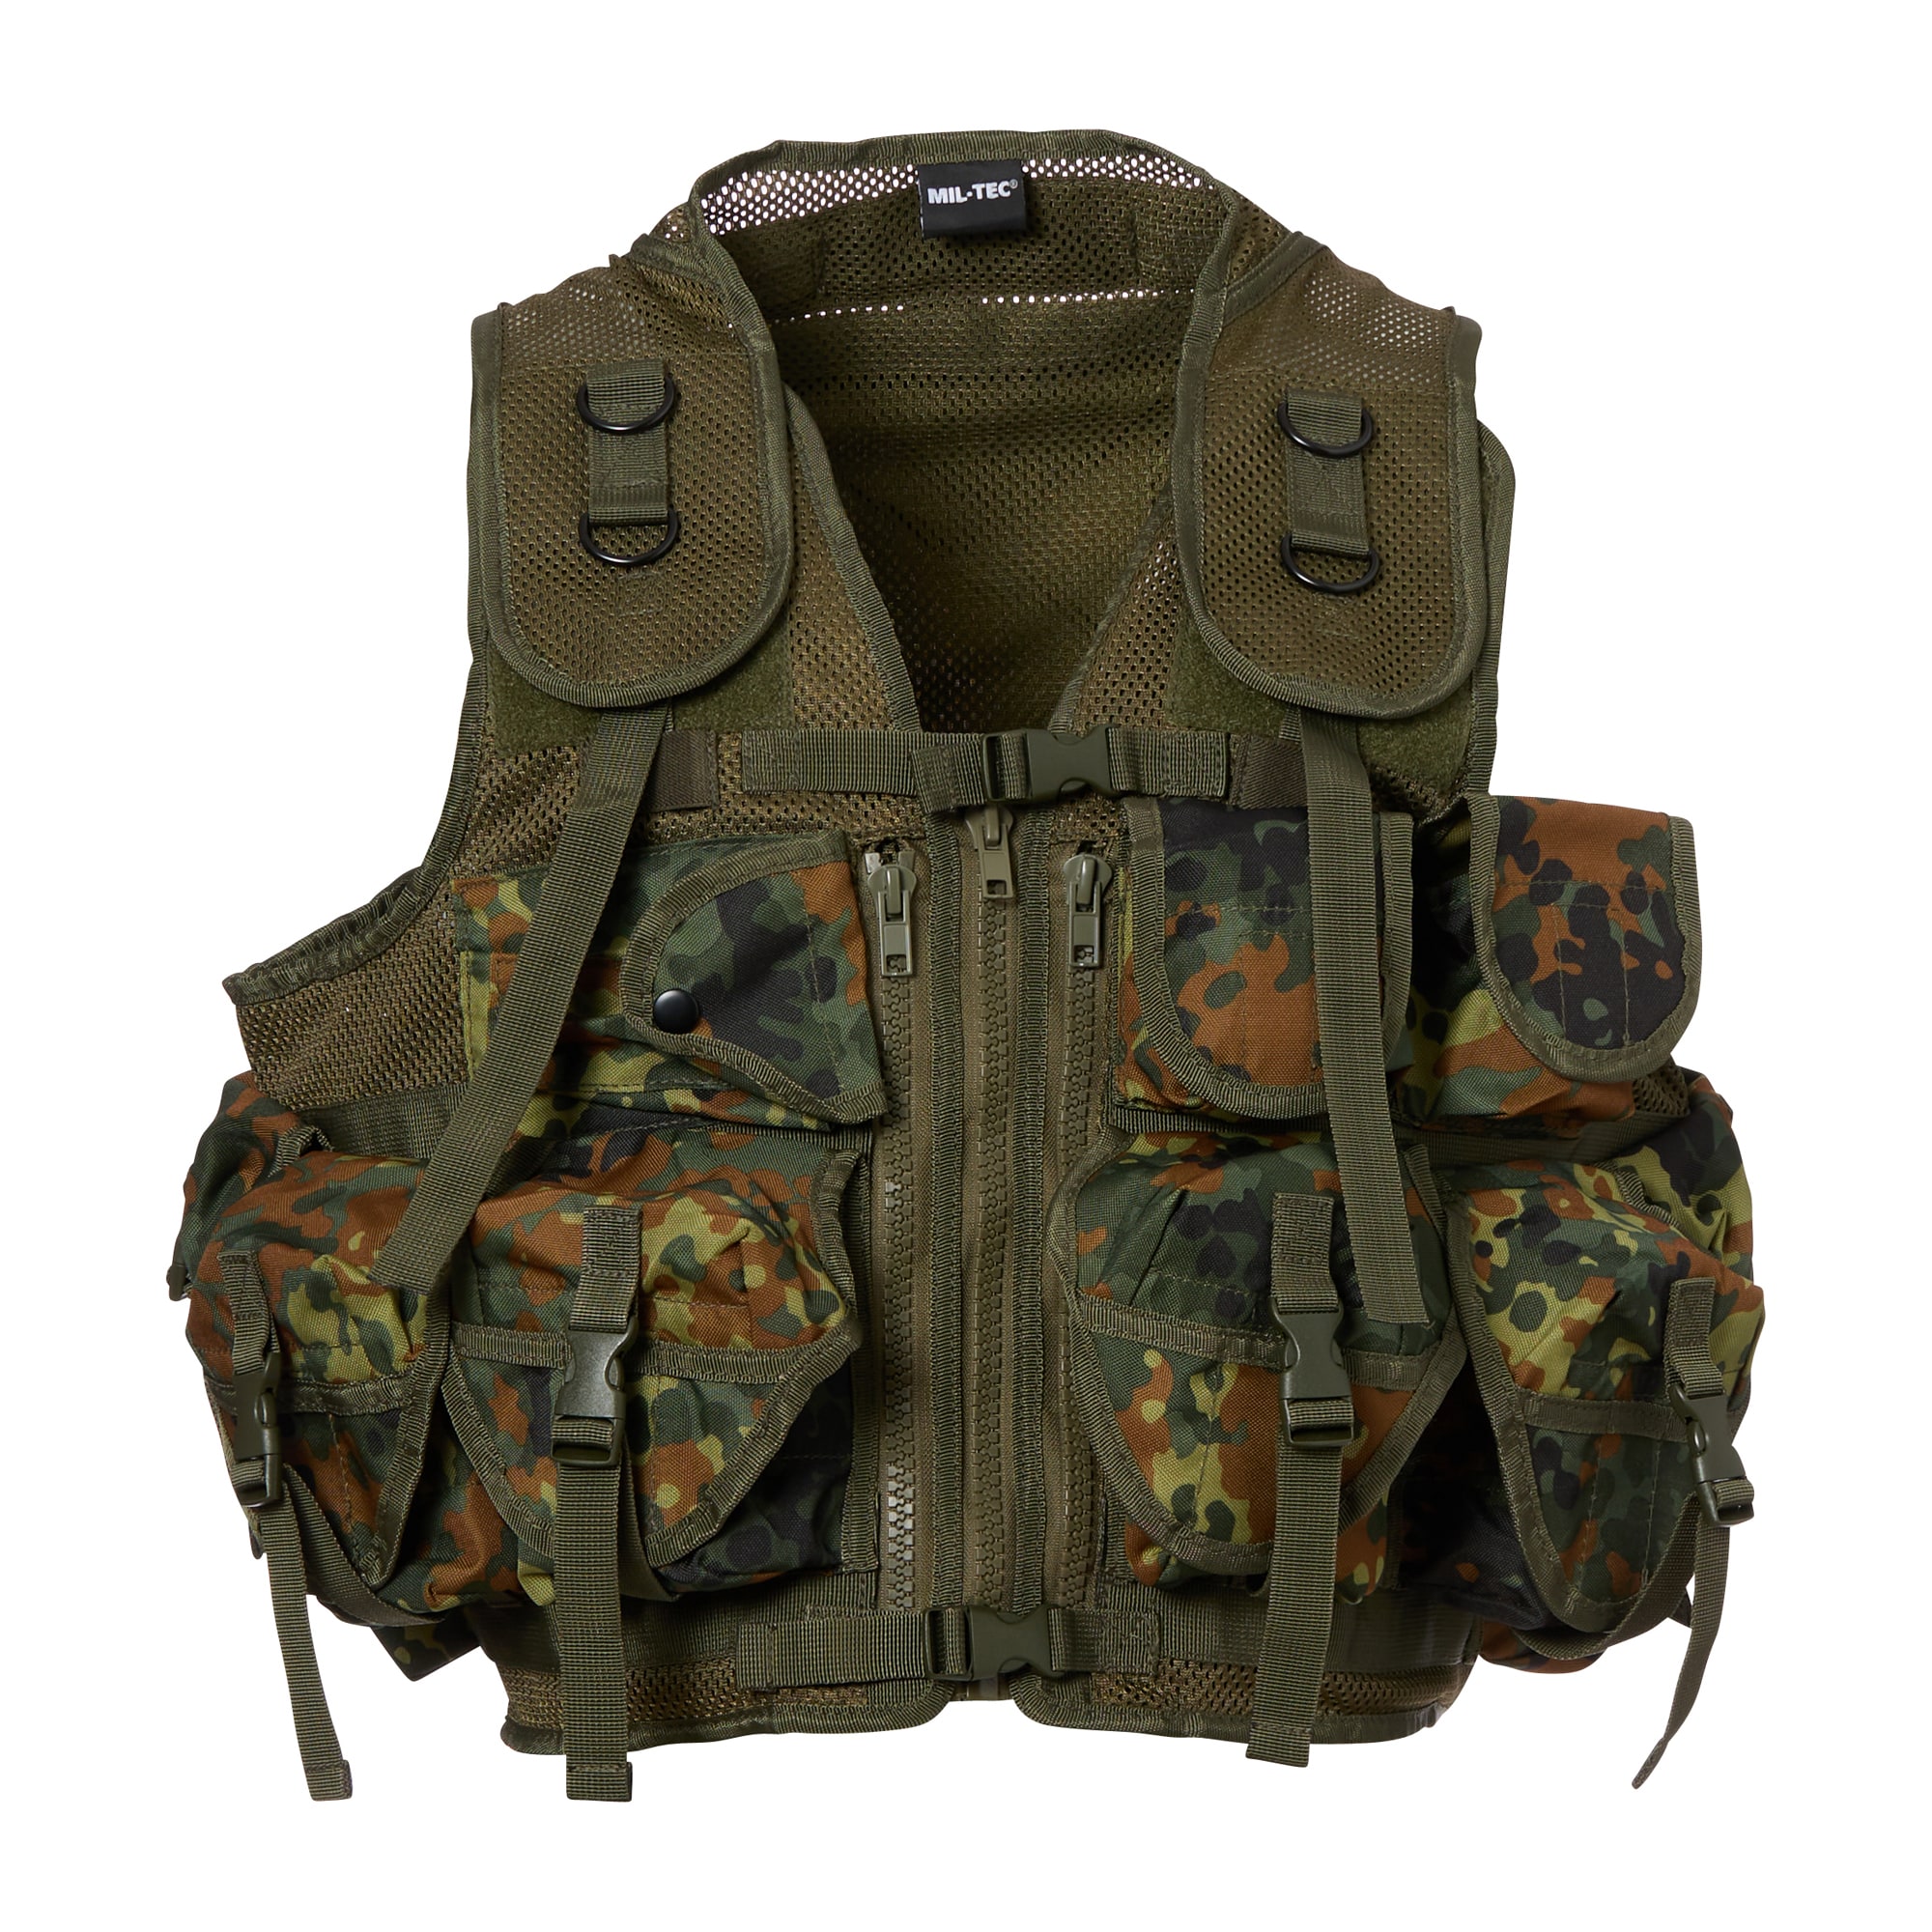 Mil-Tec Tactical Vest flecktarn, Mil-Tec Tactical Vest flecktarn, Tactical Vests, Military Equipment